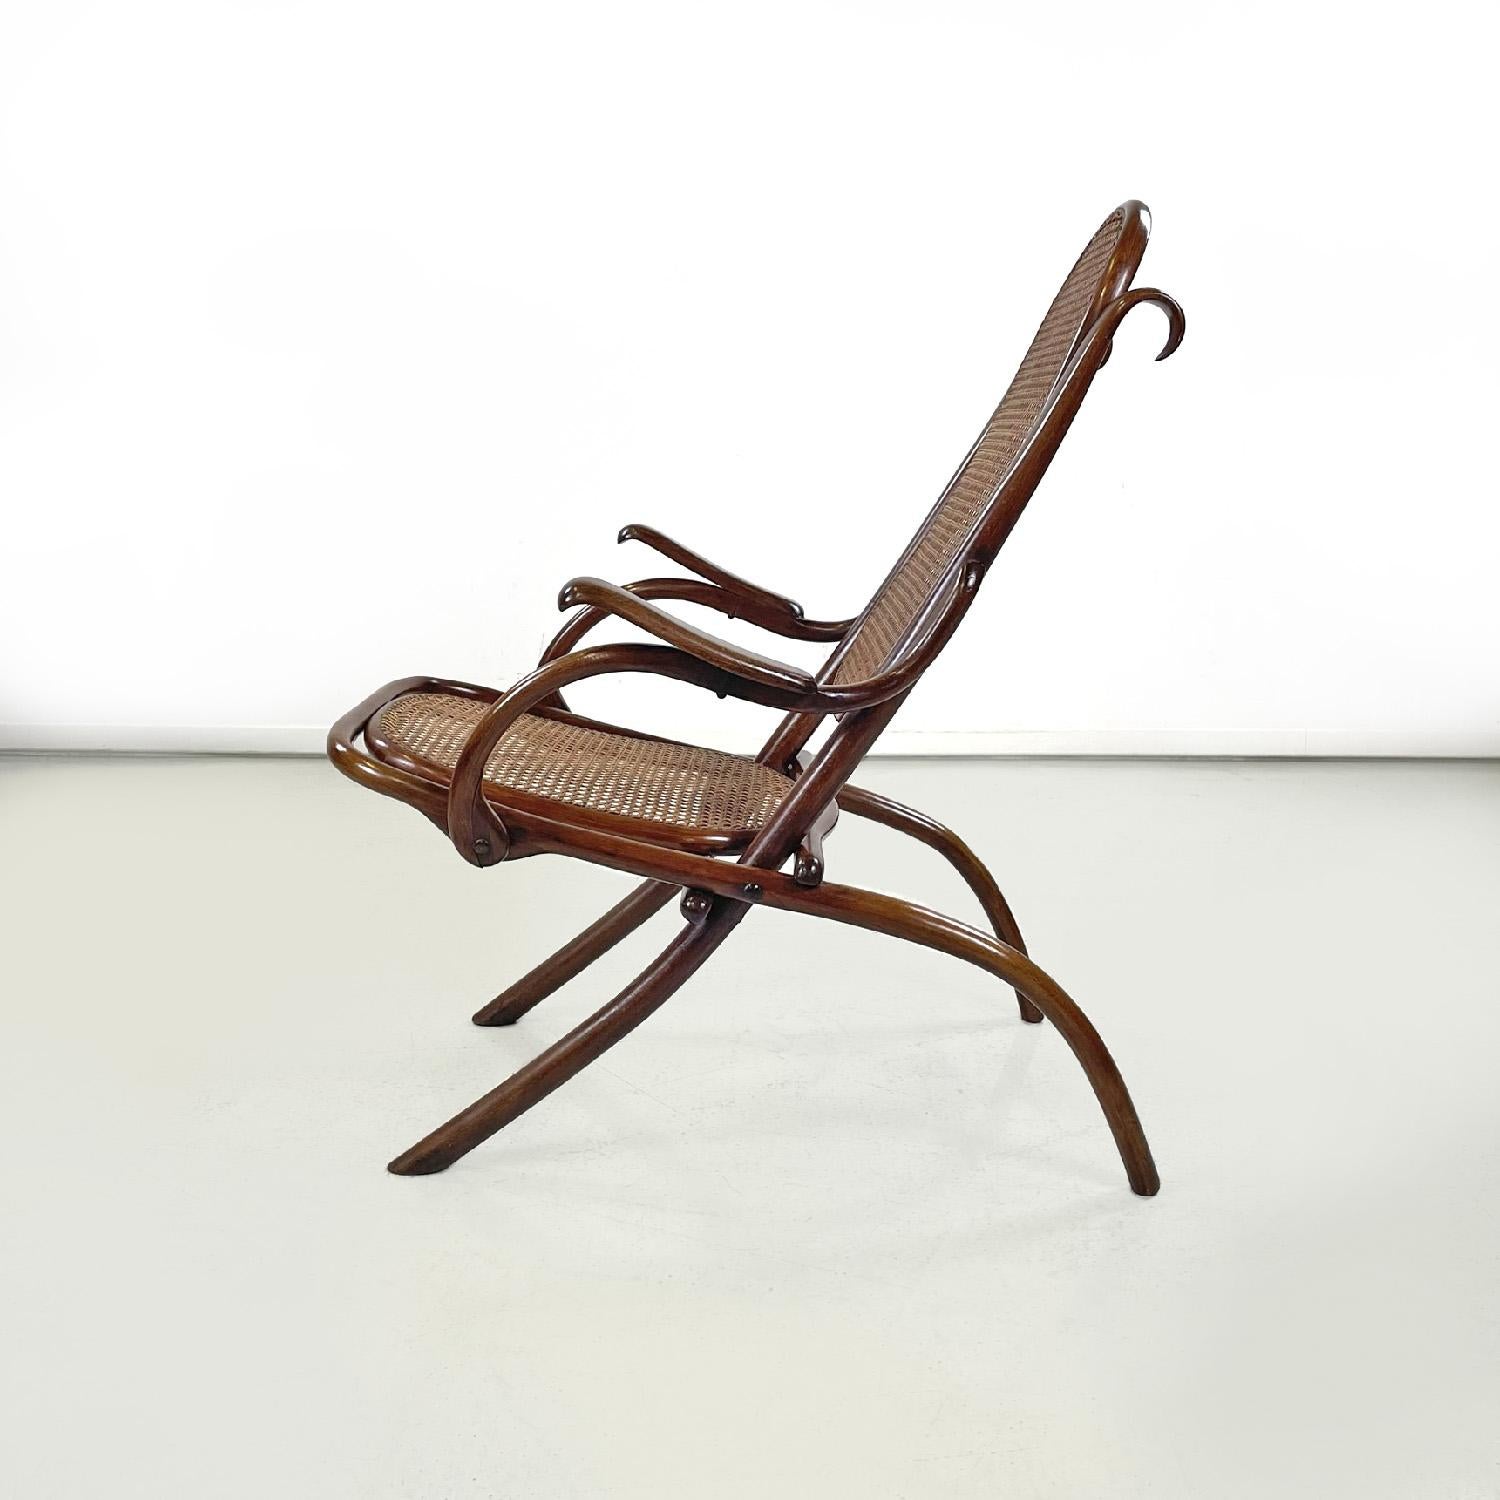 Österreichischer Thonet-Sessel aus Holz mit Wiener Stroh, Ende 1800
Sessel aus Holz und Wiener Stroh. Die Holzstruktur hat einen runden Querschnitt und weist abgerundete Linien auf, die die Elemente des Sessels bilden, wie die Armlehnen, die Beine